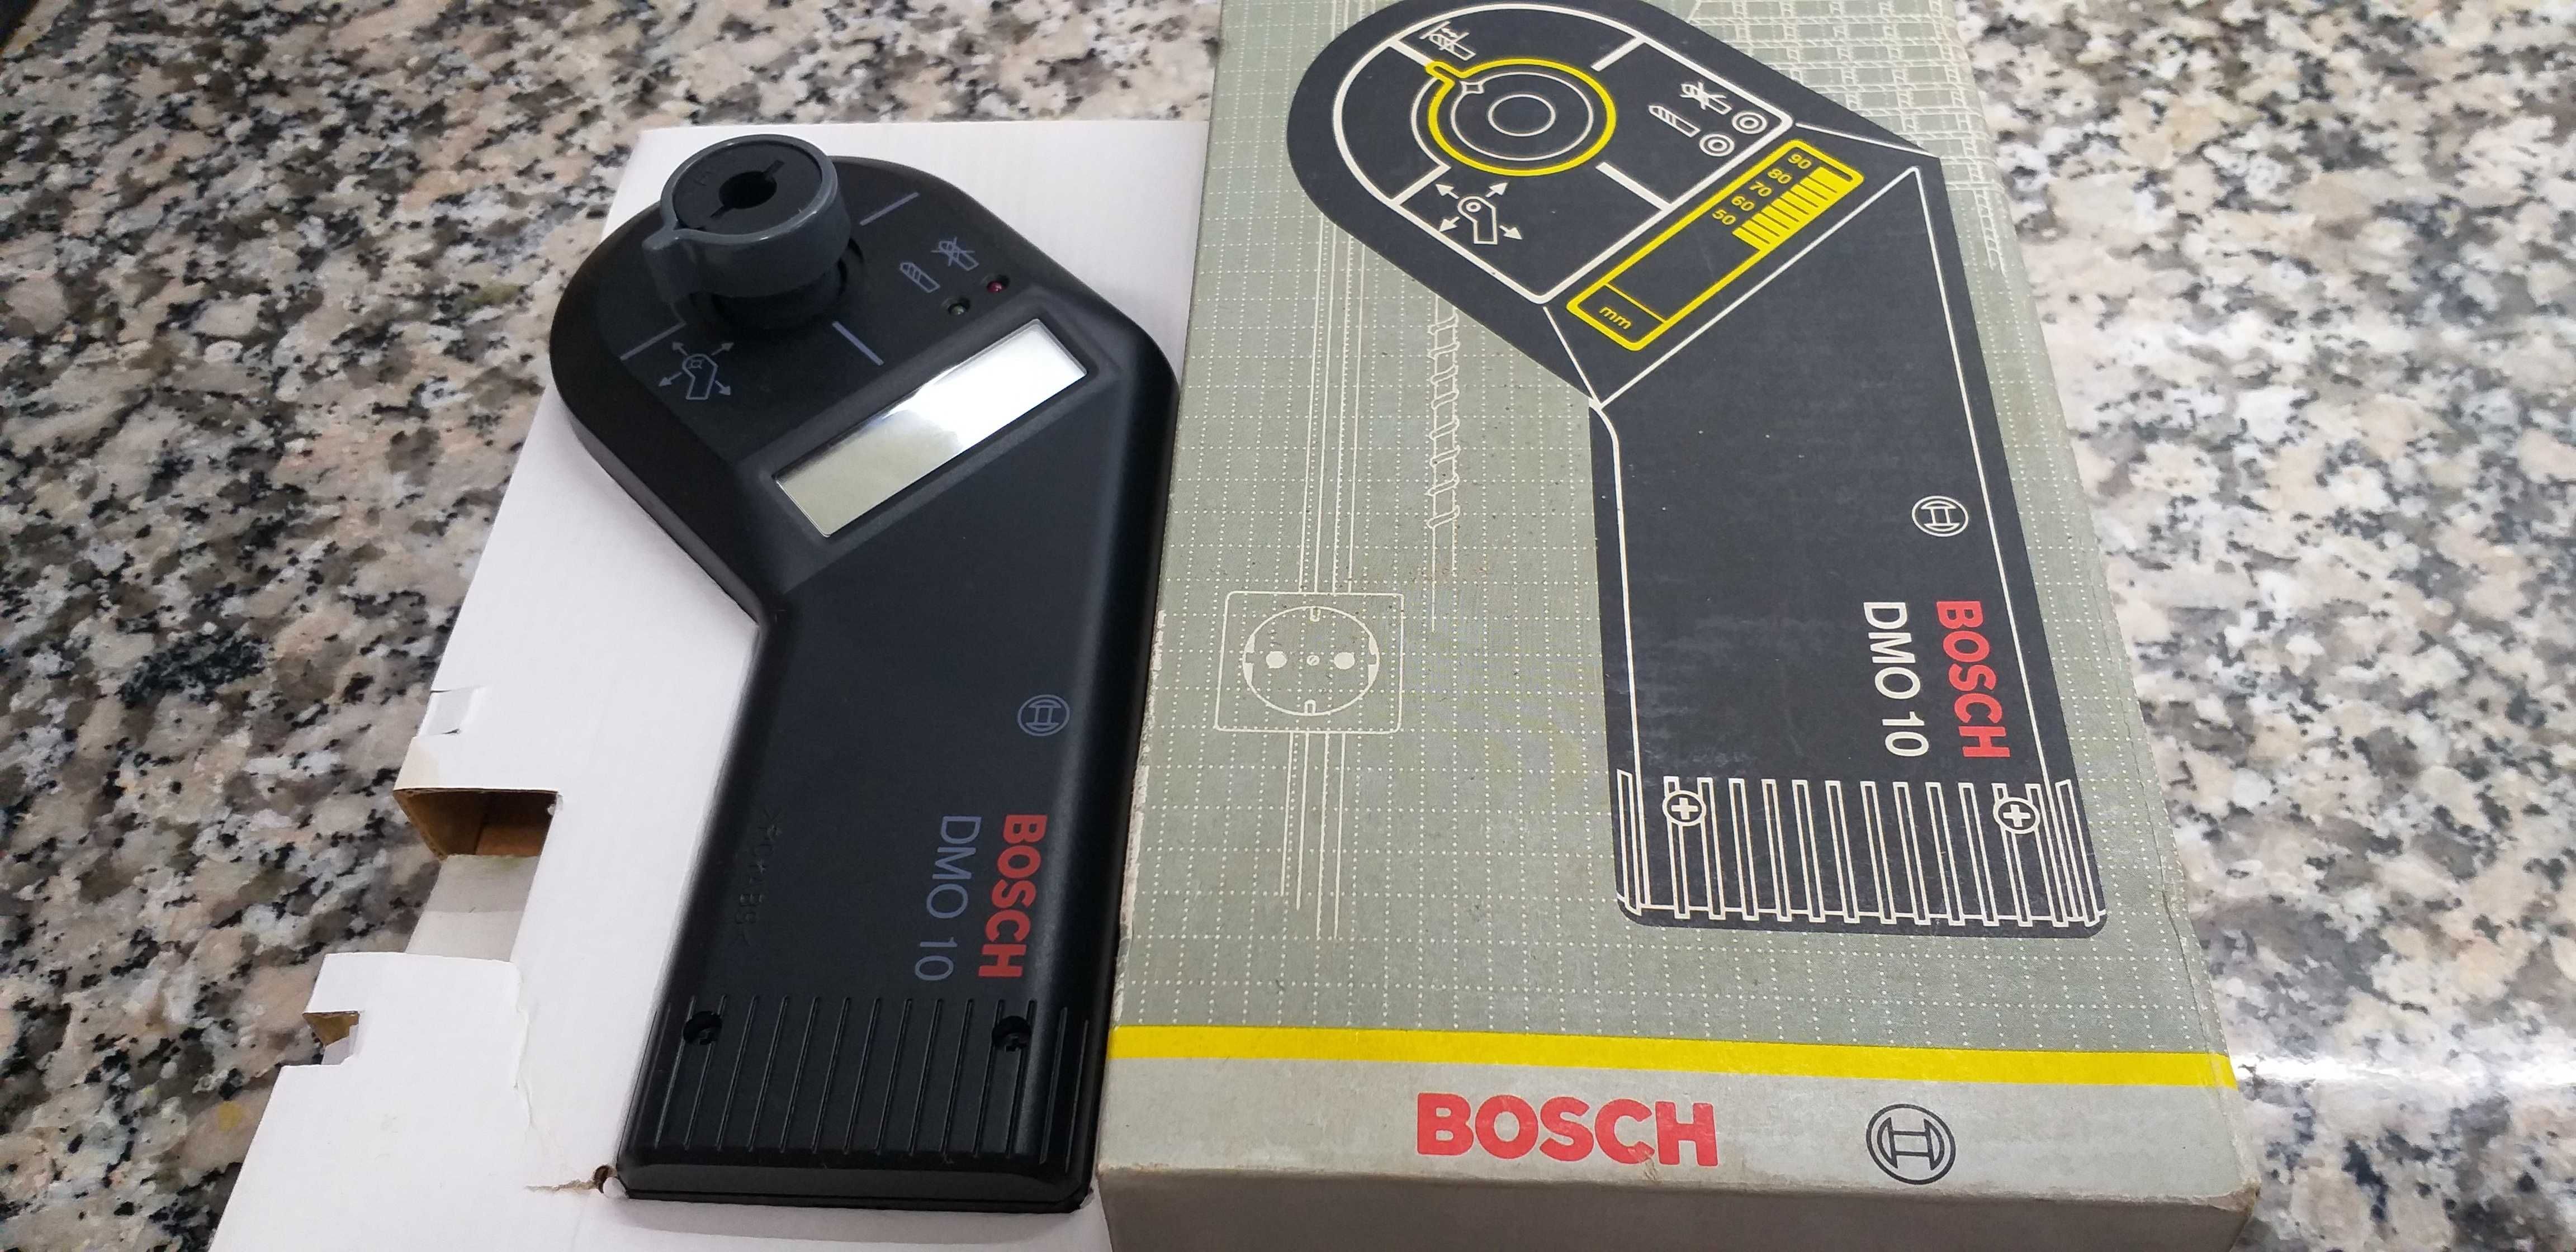 Detetor de metais digital Bosch DMO 10 "Novo"